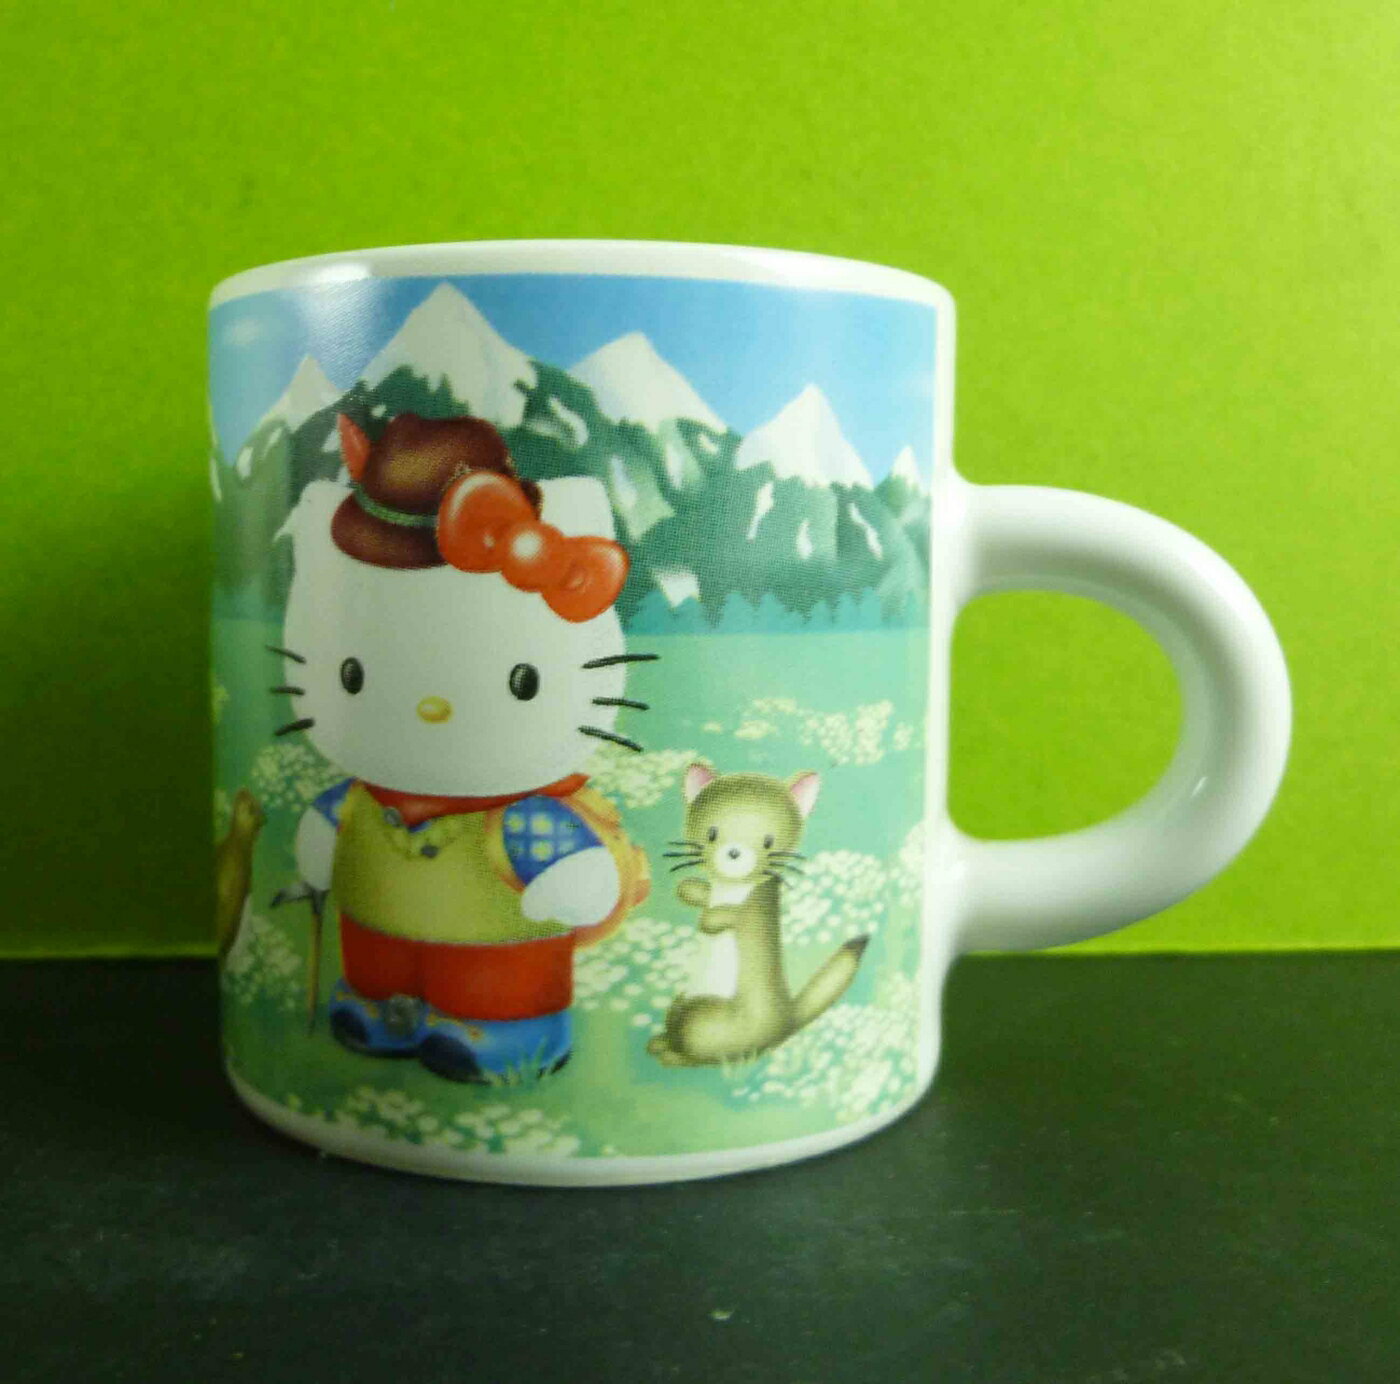 【震撼精品百貨】Hello Kitty 凱蒂貓 咖啡杯-阿爾瑪 震撼日式精品百貨